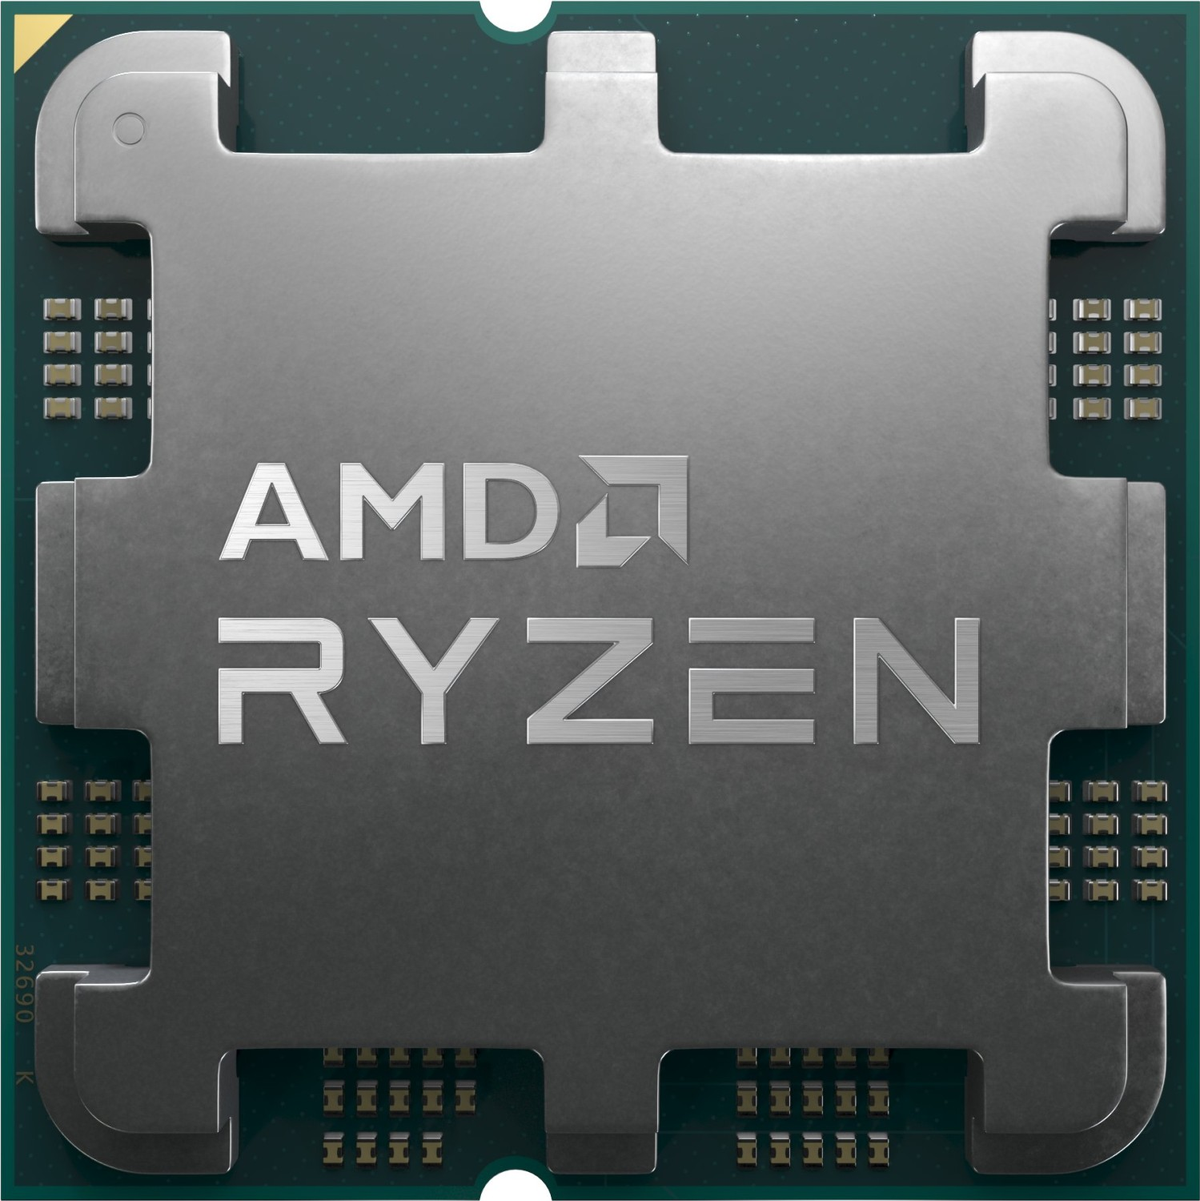 9 Ryzen 7900X3D AMD Prozessor, Schwarz